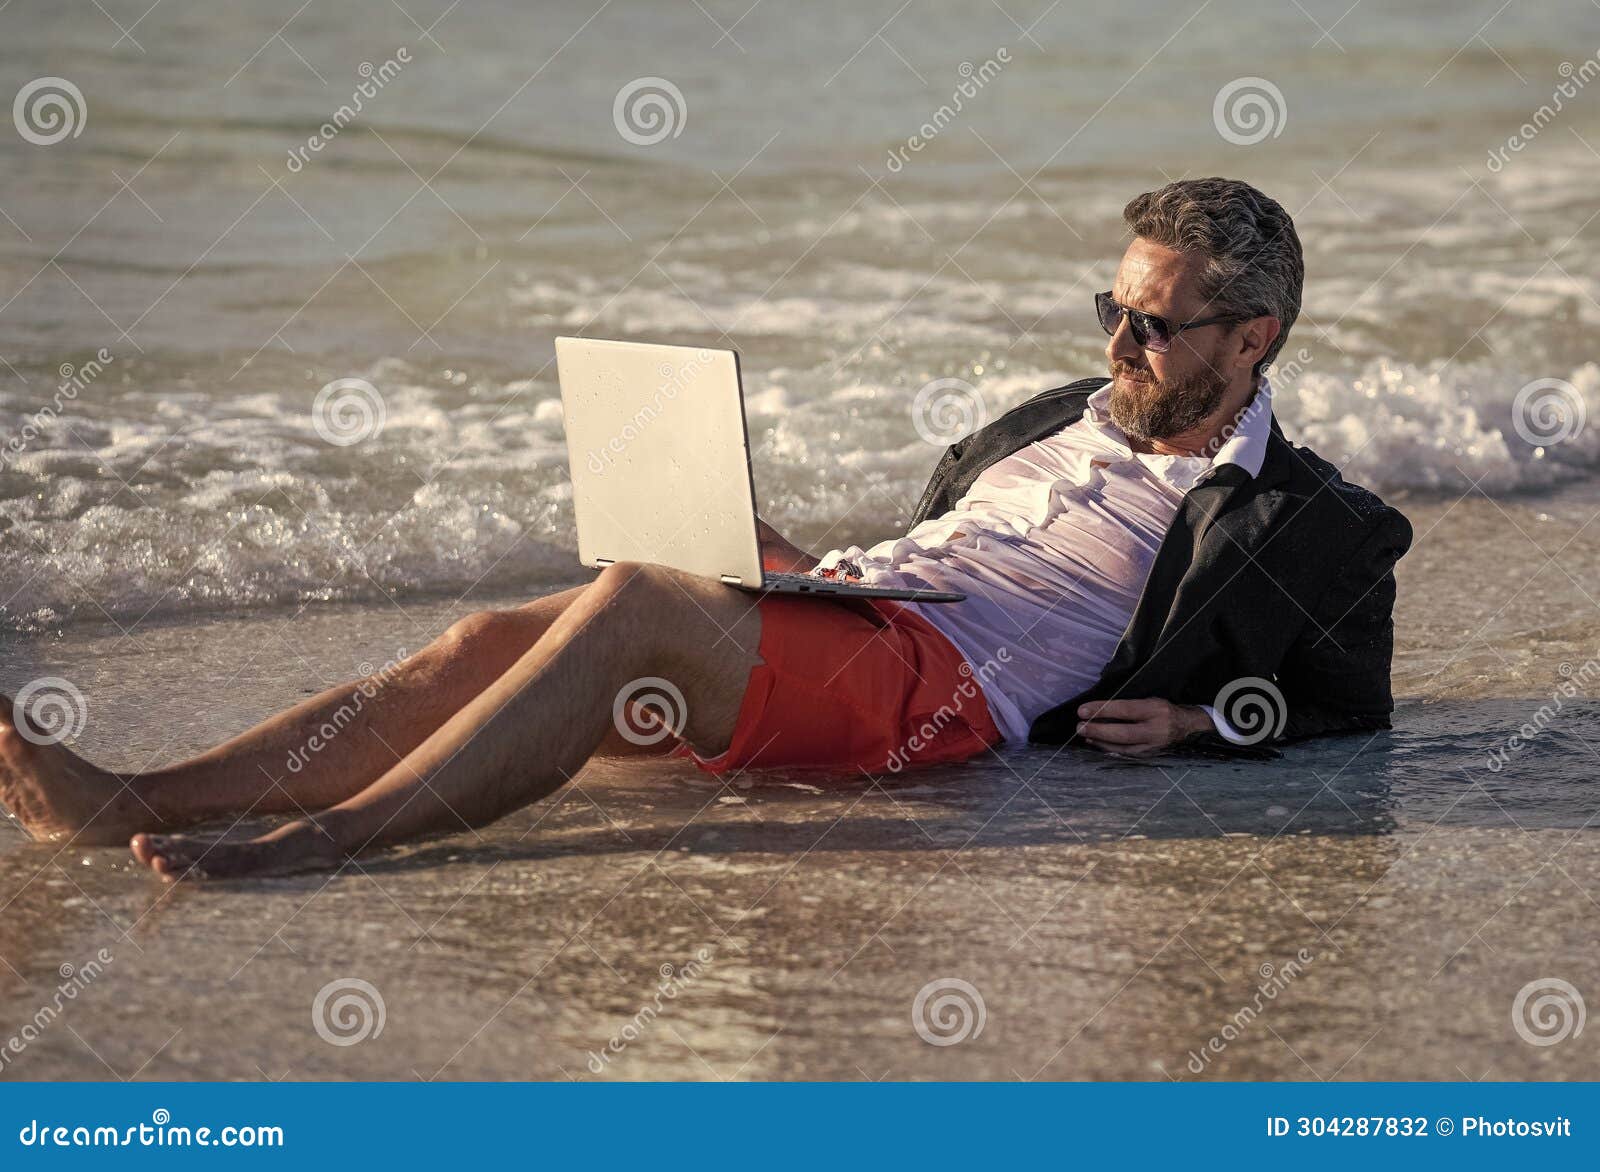 Letnia działalność biznesowa. biznesmen relaksujący się na plaży. biznesmen zrelaksowany na plaży. biznesmen w garniturze z laptopem latem. biznes marzy o letnim biznesie morskim. naładuj podróżując.